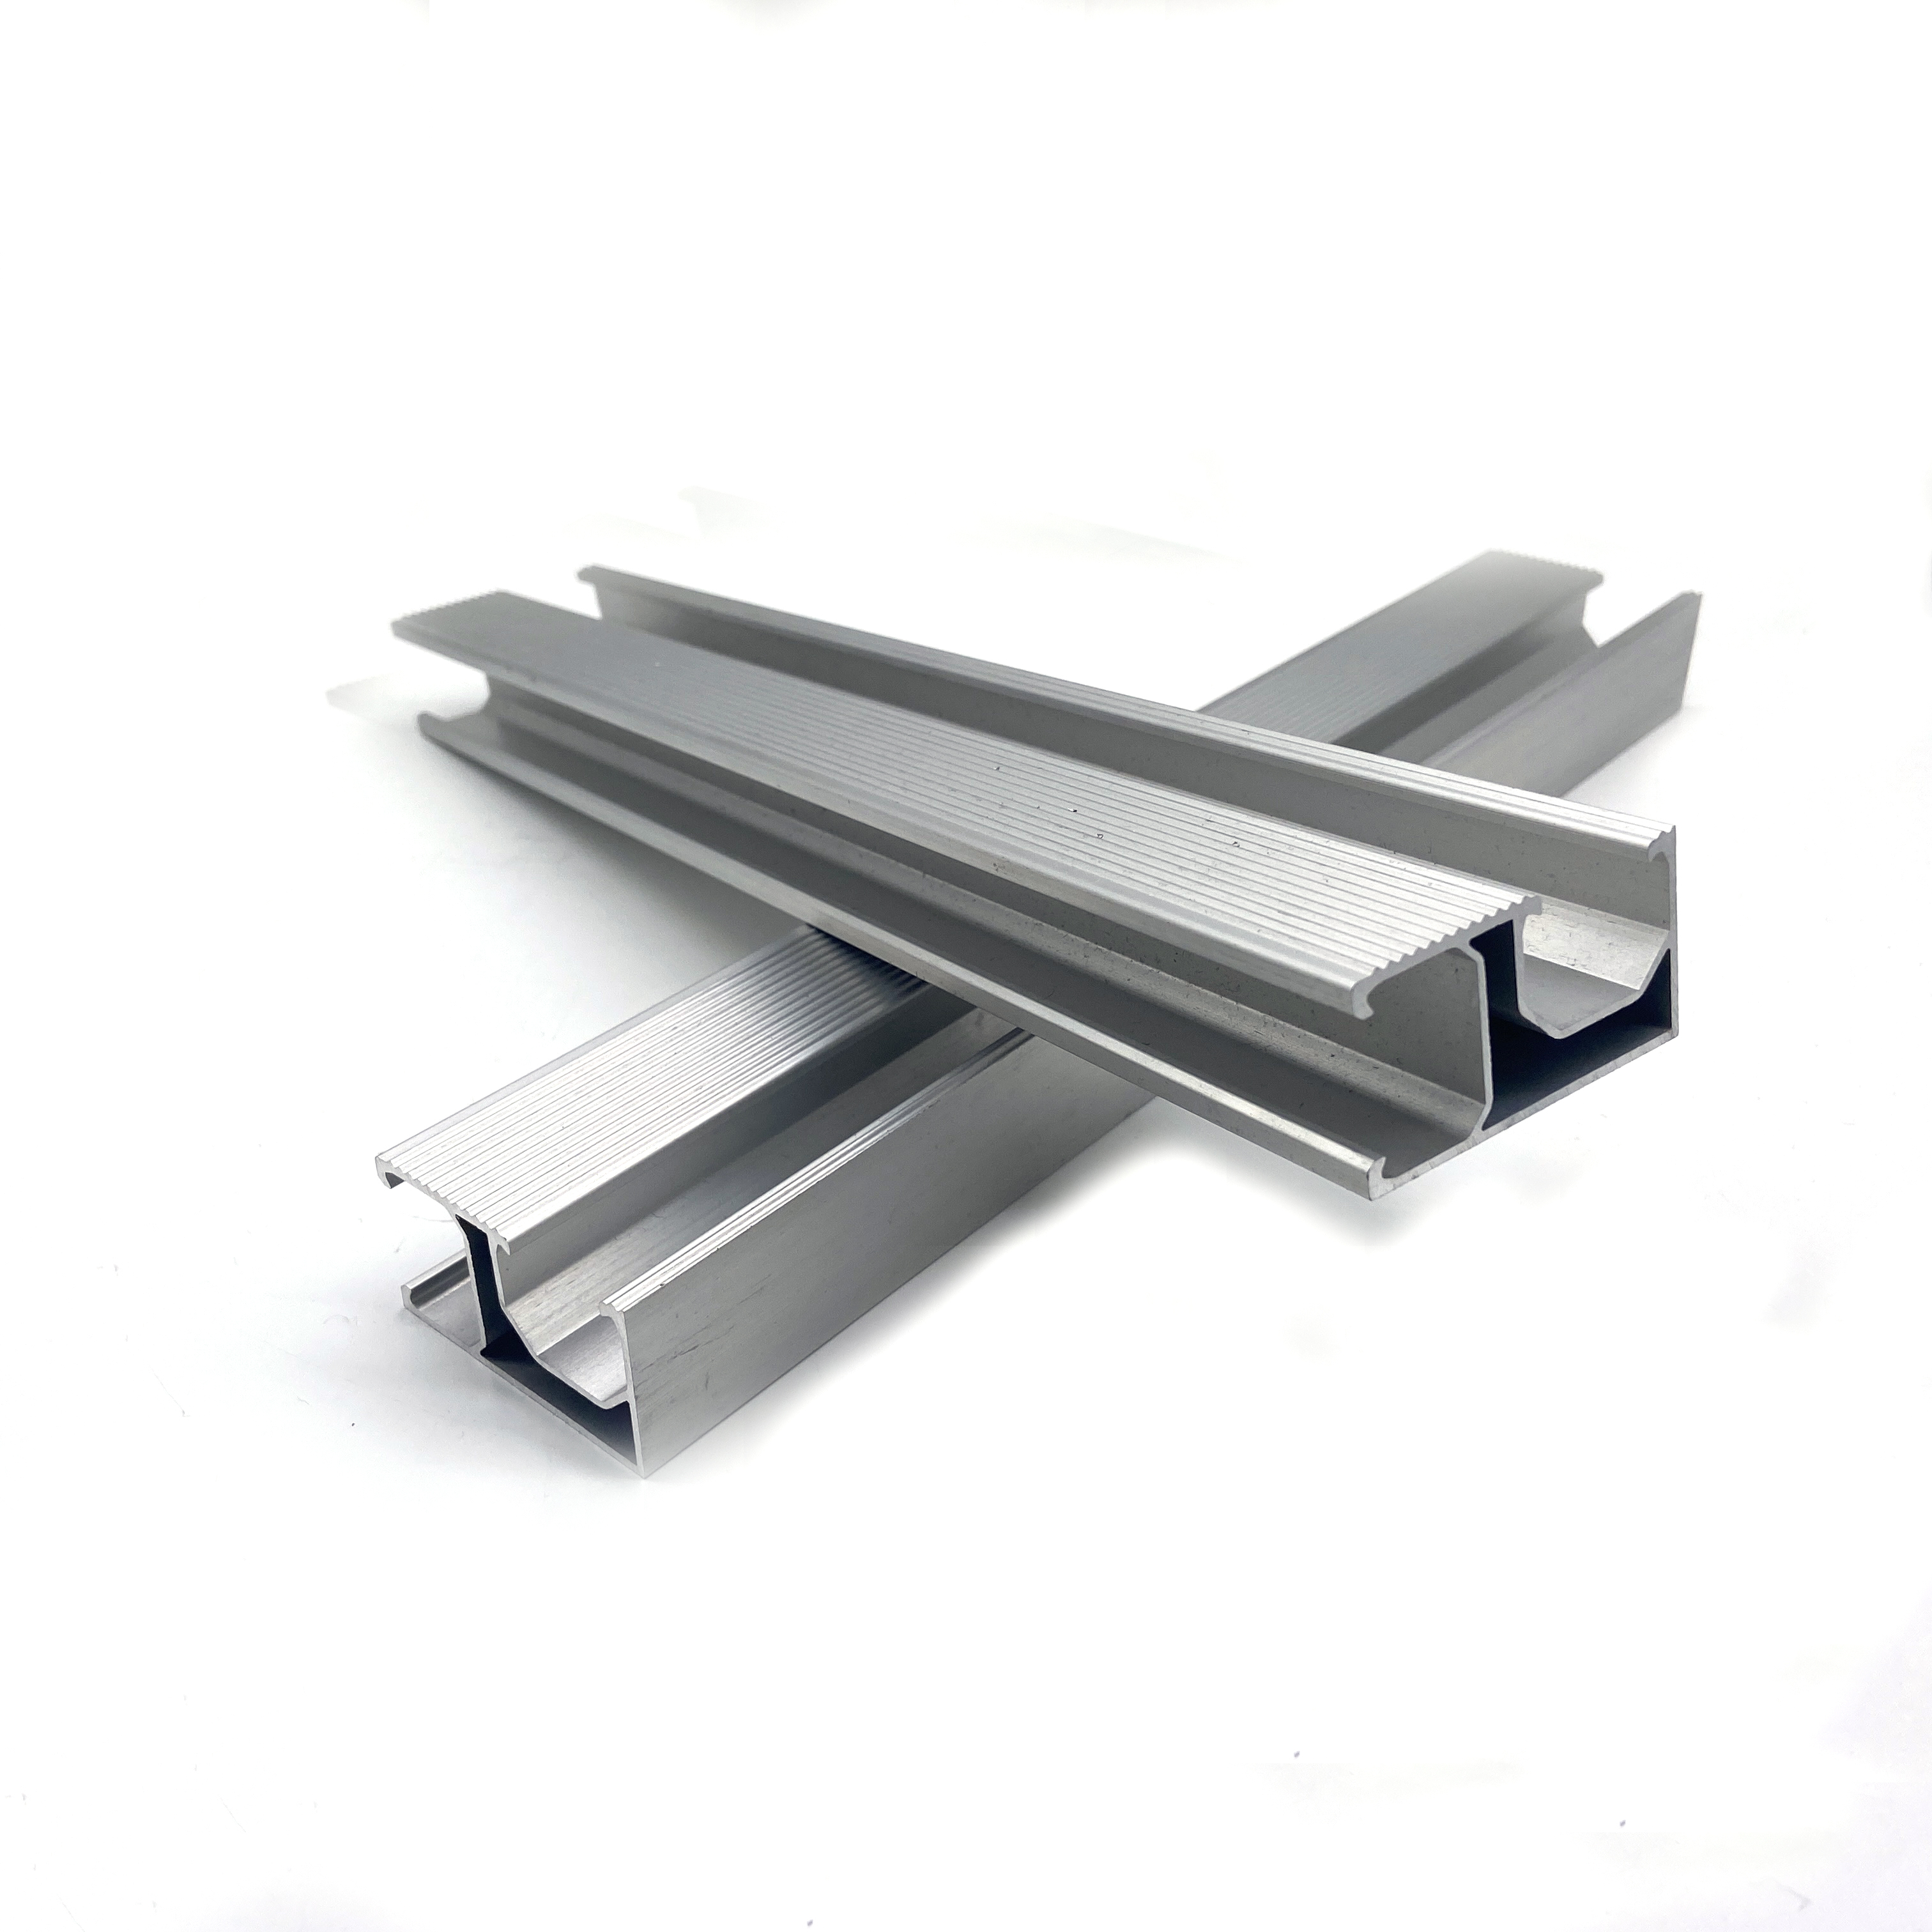 60 séries Système solaire T-slot Profils de construction en aluminium Support de profil d'extrusion en aluminium